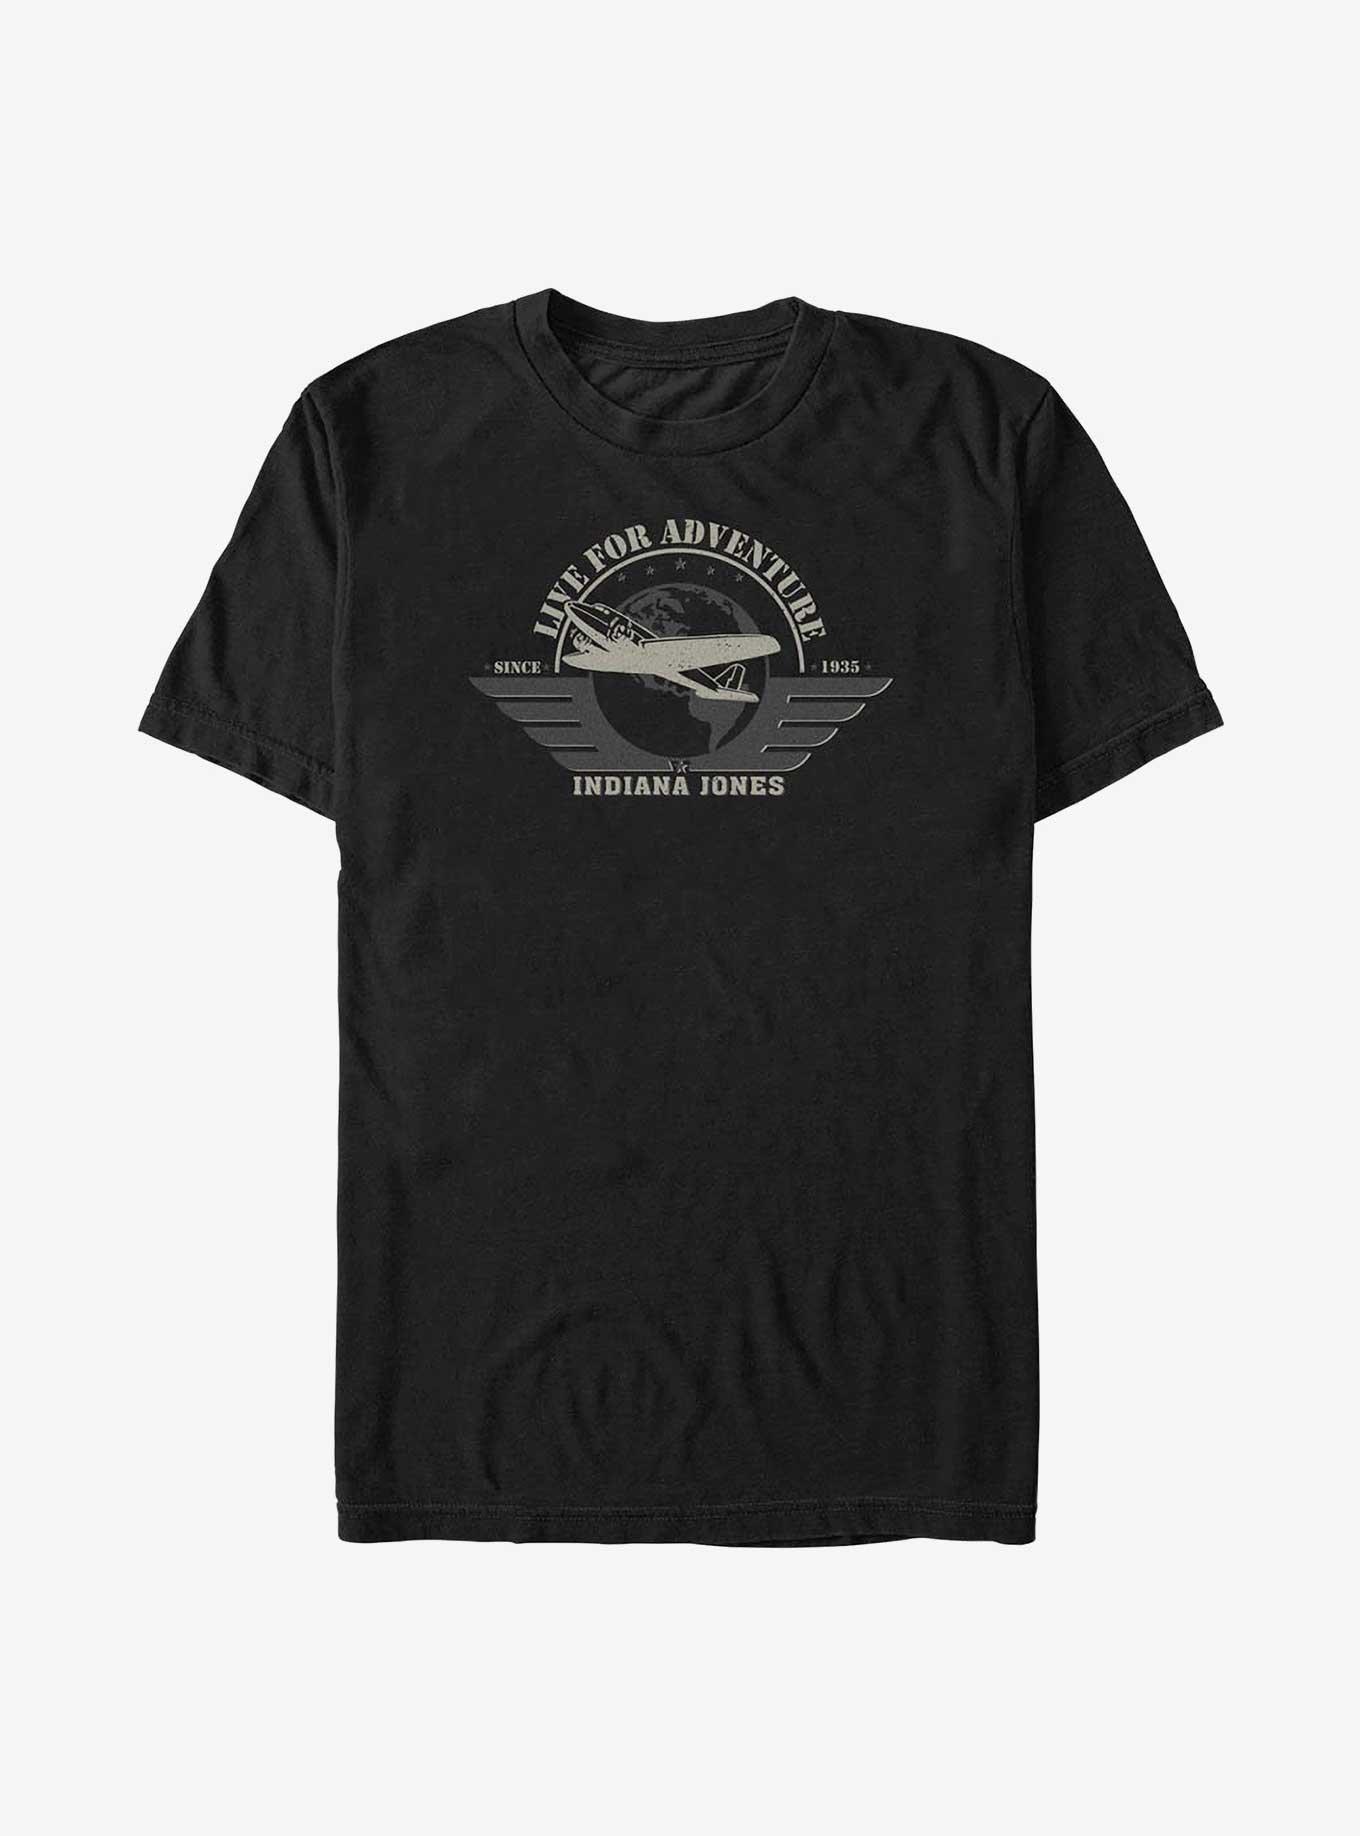 Indiana Jones Aviation Badge Big & Tall T-Shirt, BLACK, hi-res